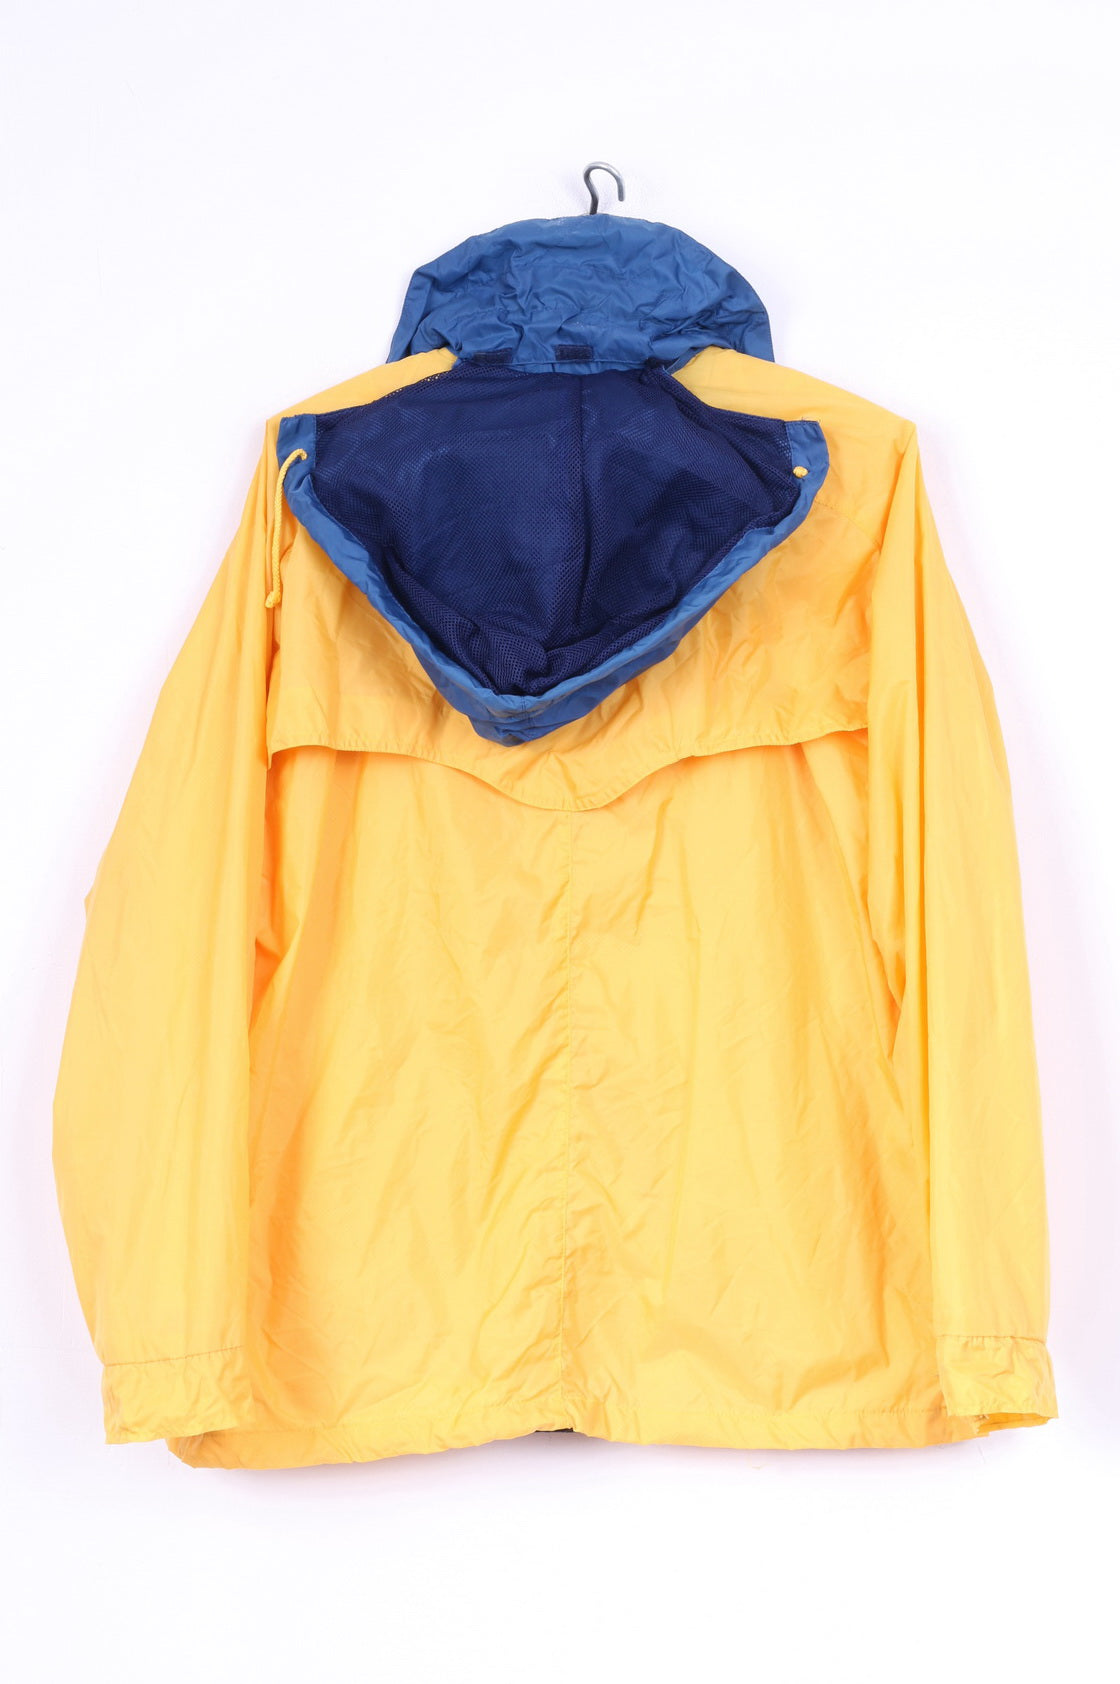 F.L.G. Members Boys 176 Lightweight Jacket Yellow Full Zipper Hooded Nylon Waterproof